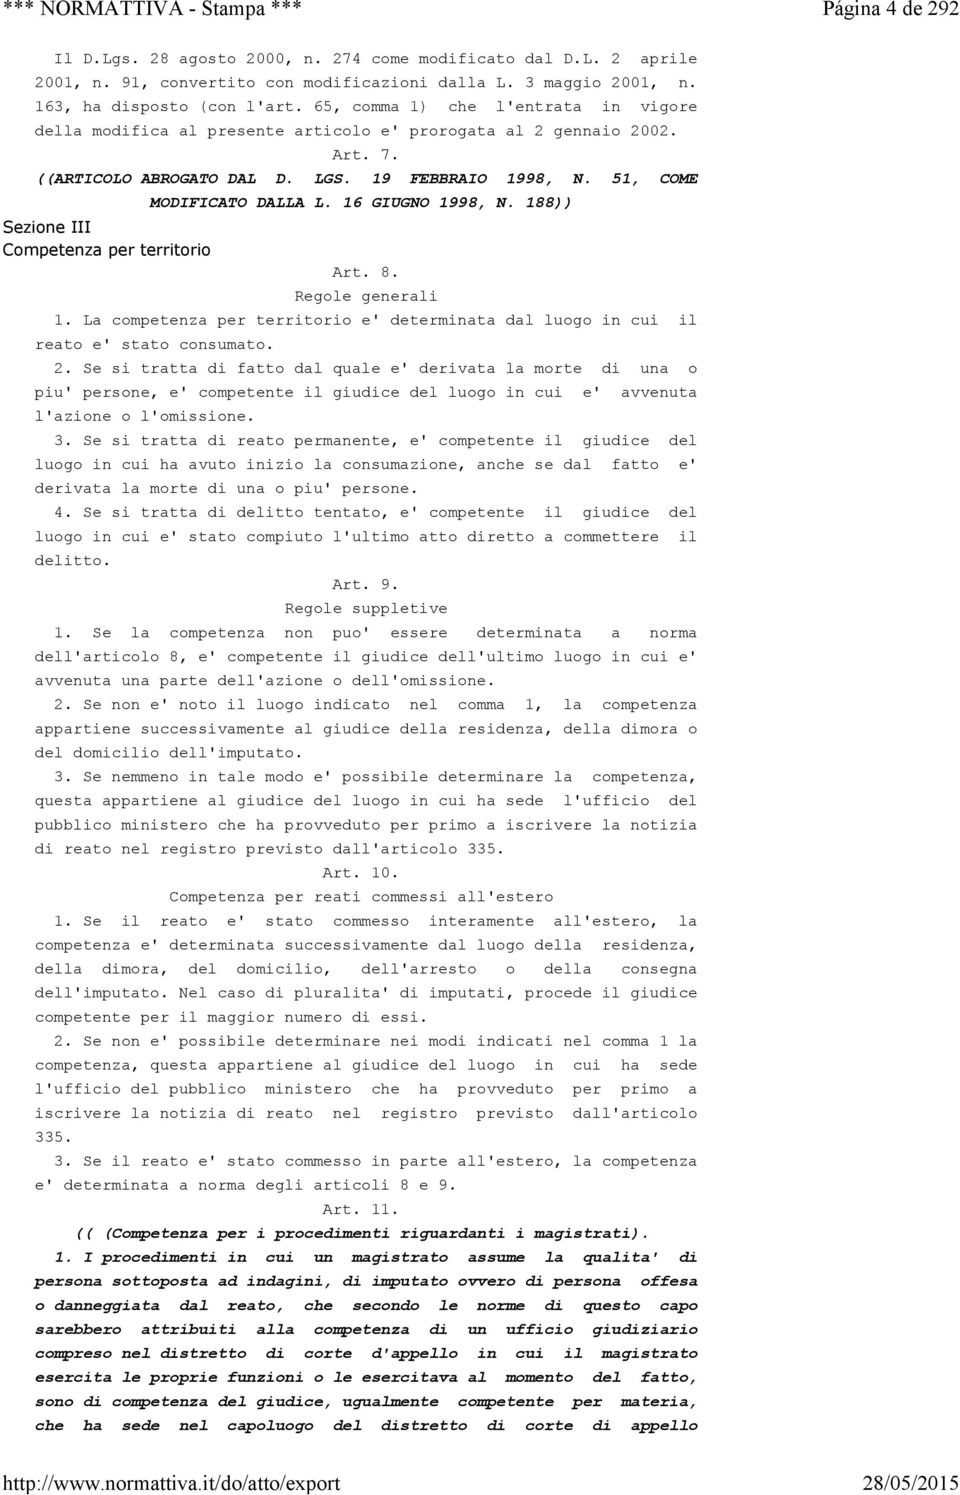 51, COME Sezione III Competenza per territorio MODIFICATO DALLA L. 16 GIUGNO 1998, N. 188)) Art. 8. Regole generali 1.